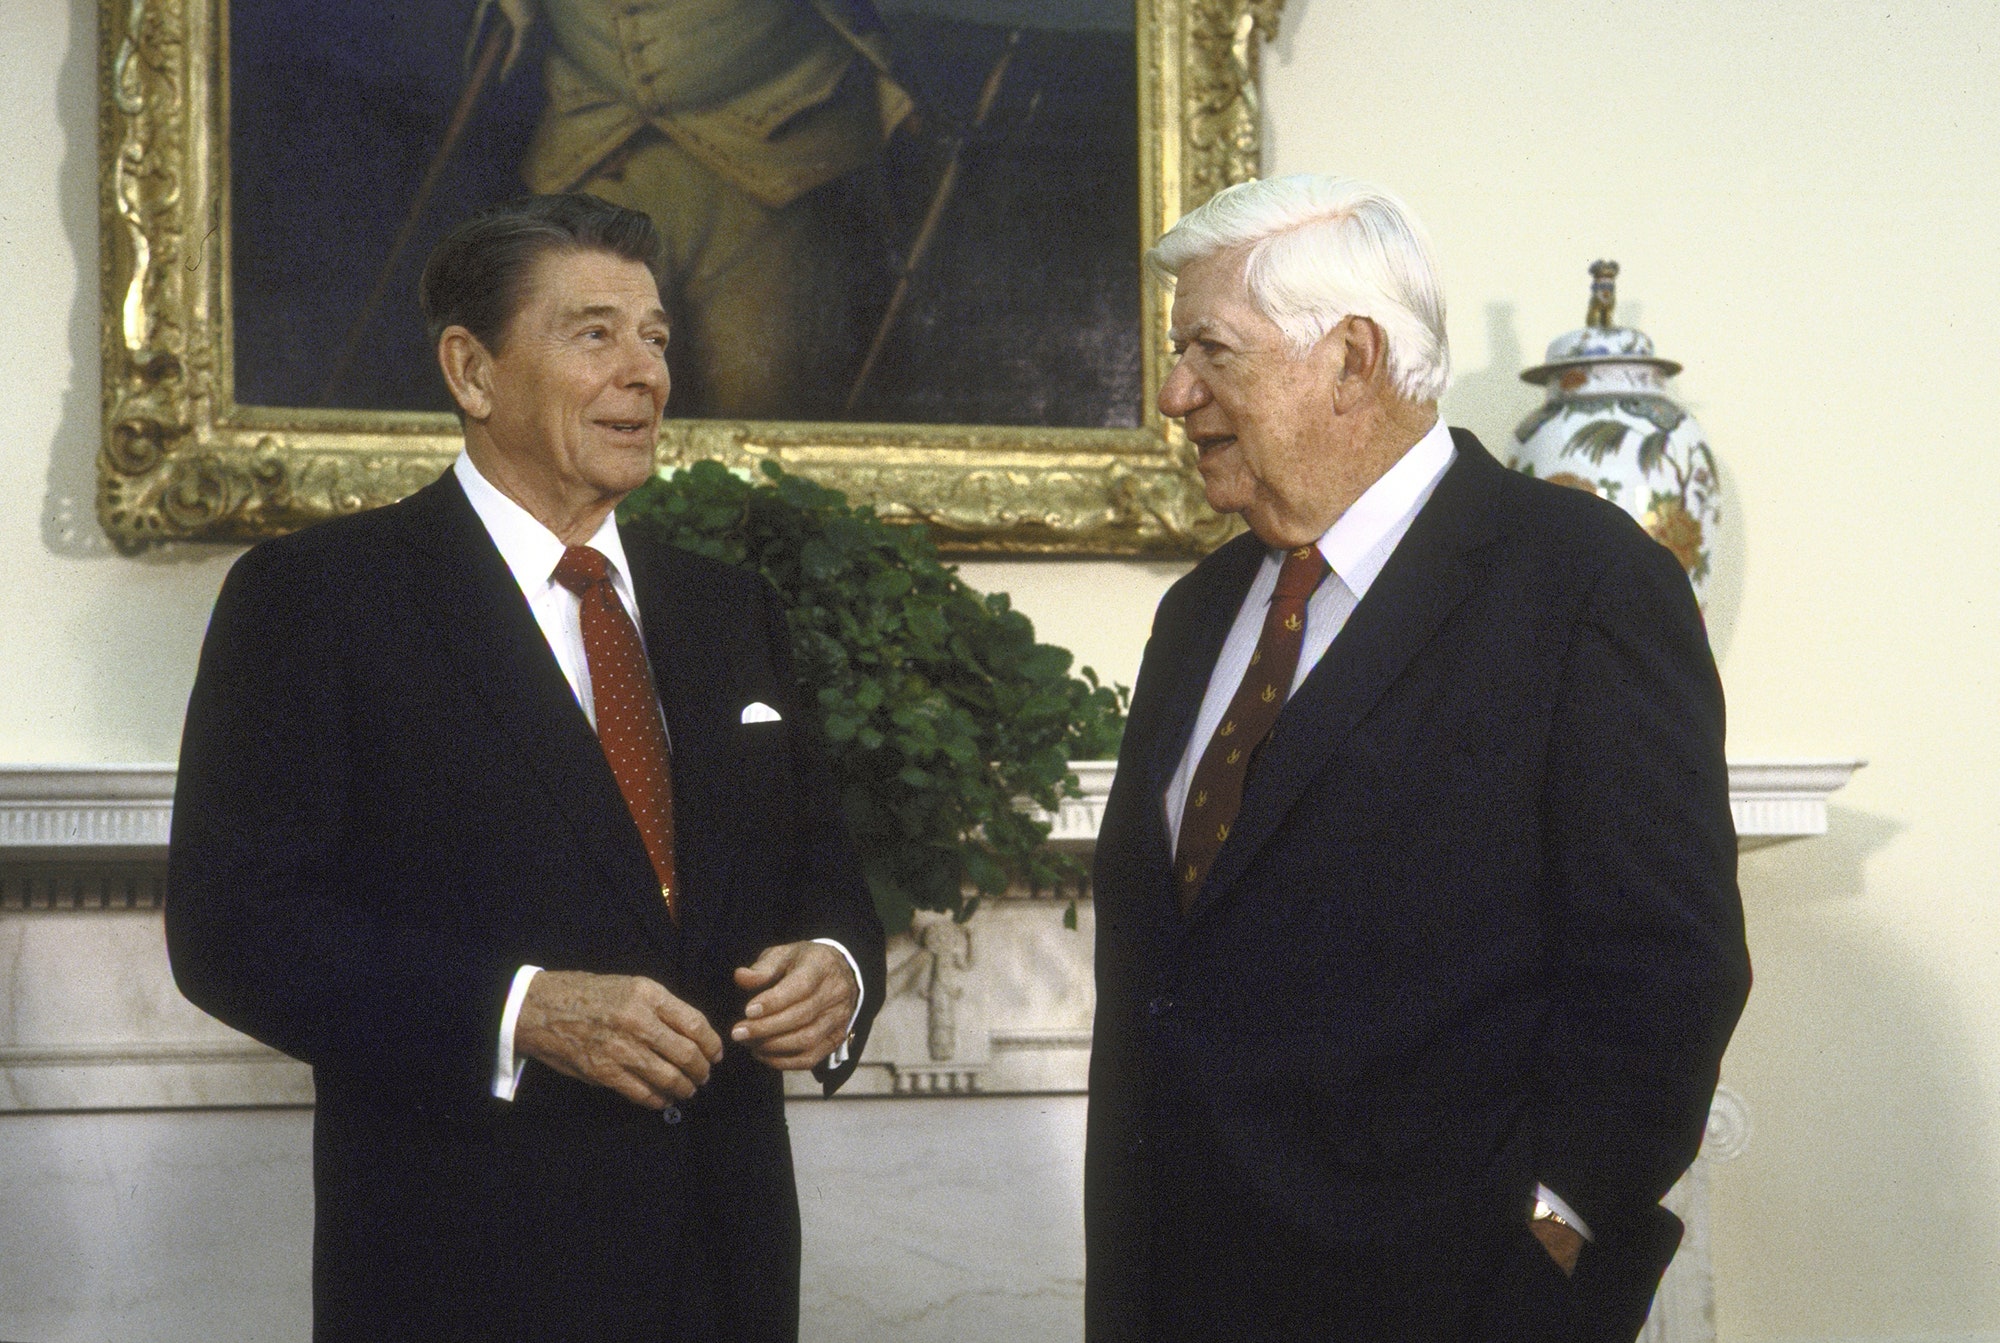 President Reagan & Tip O'Neill